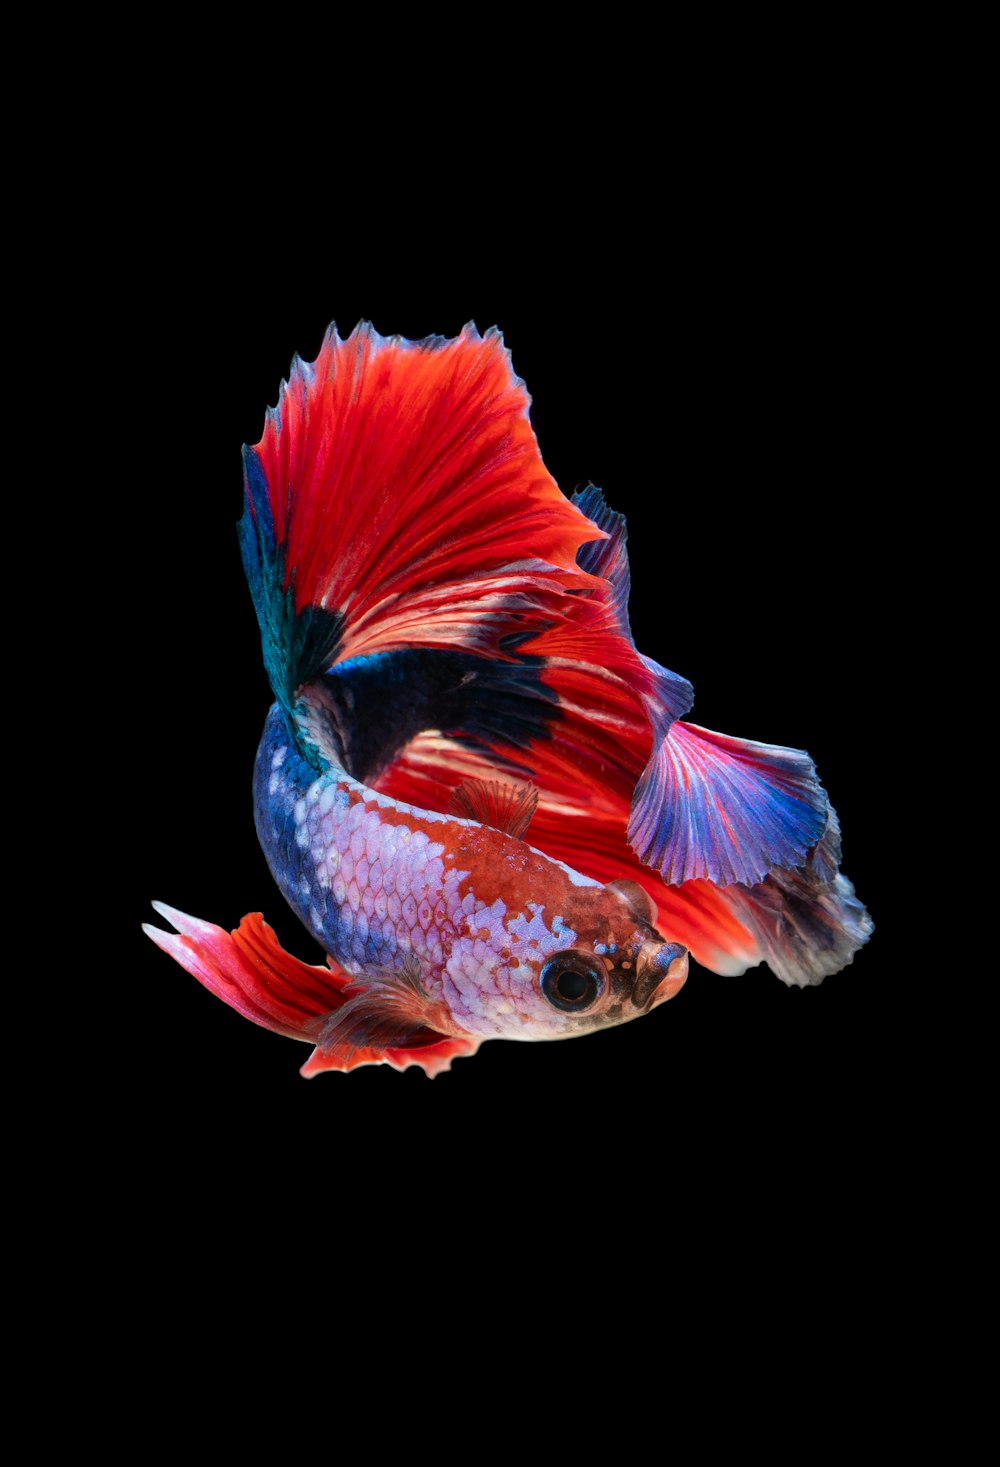 Fish Wallpapers: Free HD Download [500+ HQ] | Unsplash